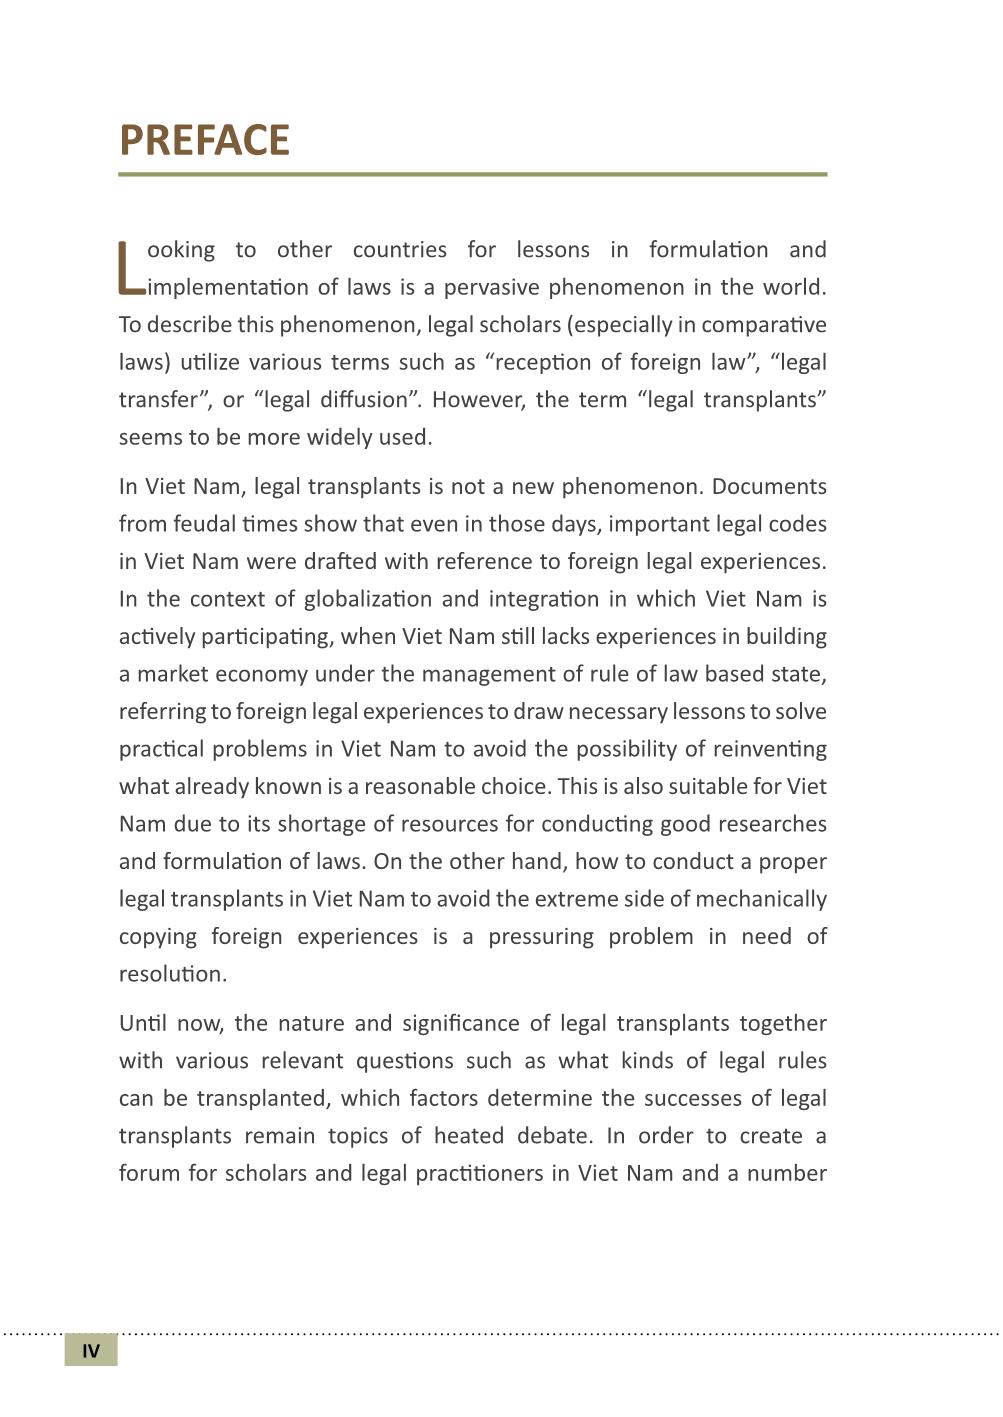 Chuyển hóa pháp luật và các vấn đề ở Việt Nam (Phần 1) trang 3